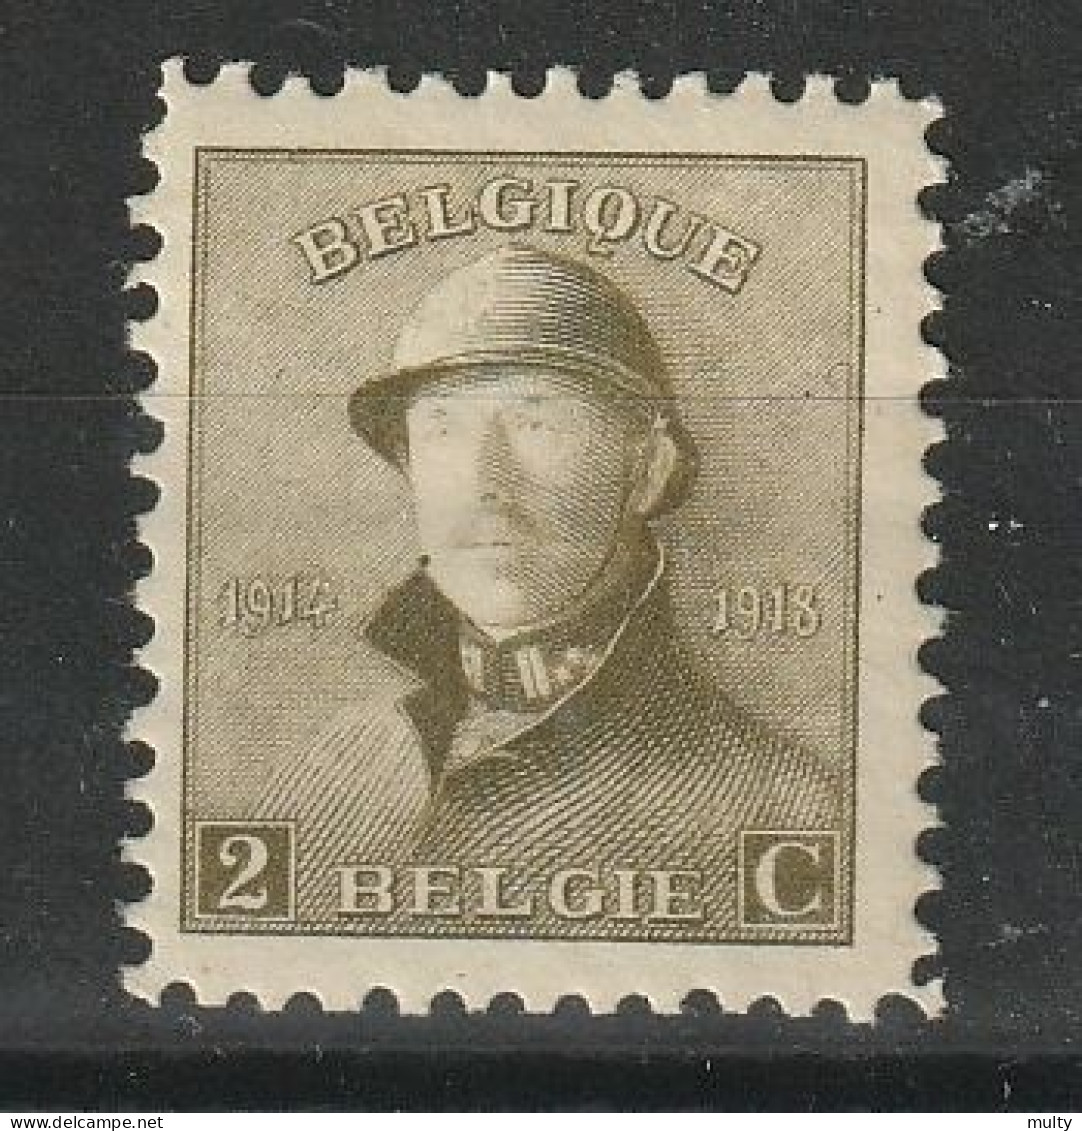 België OCB 166 ** MNH - 1919-1920 Trench Helmet